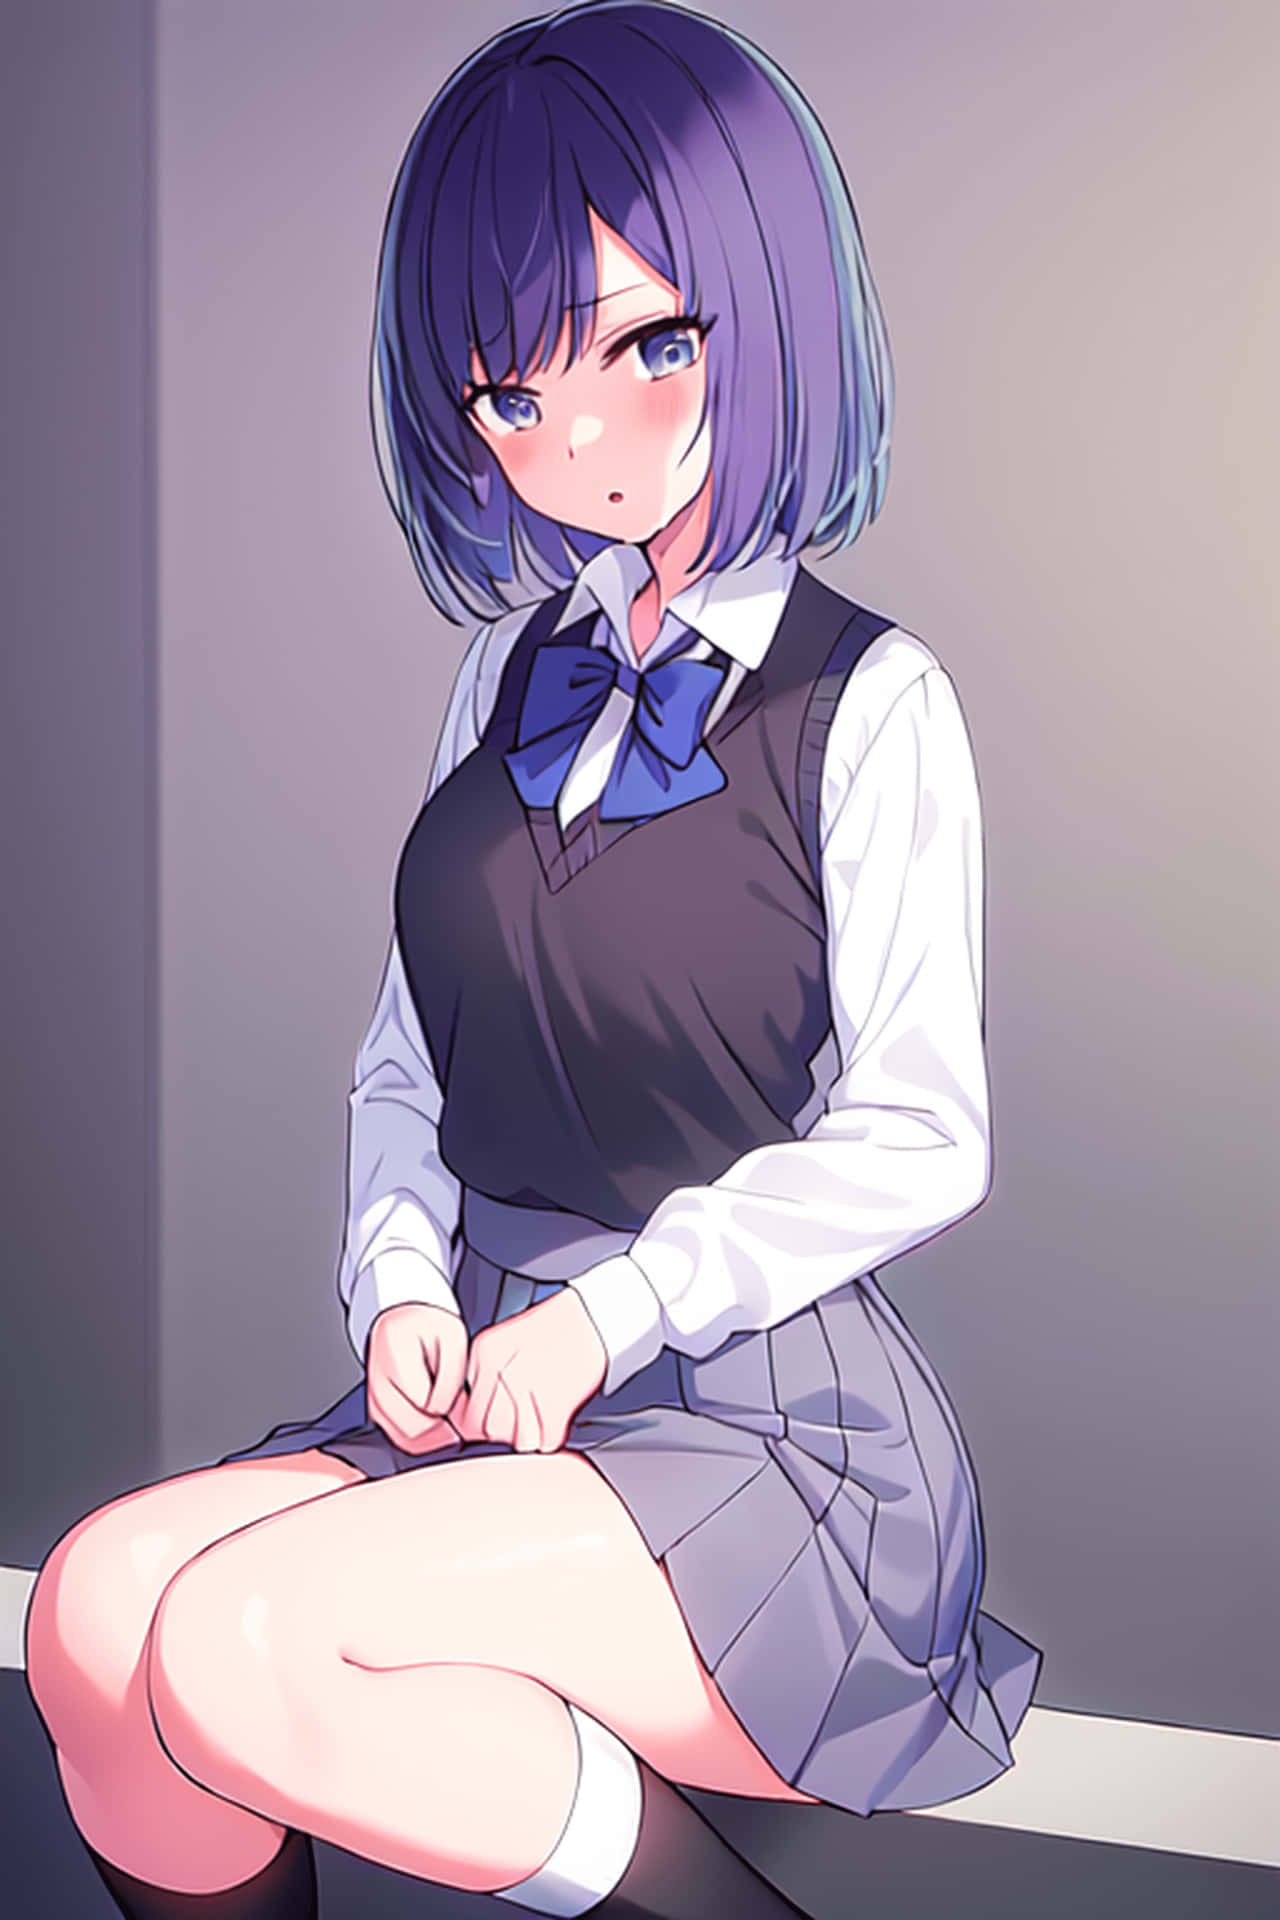 Blue Haired Anime Girlin School Uniform Wallpaper